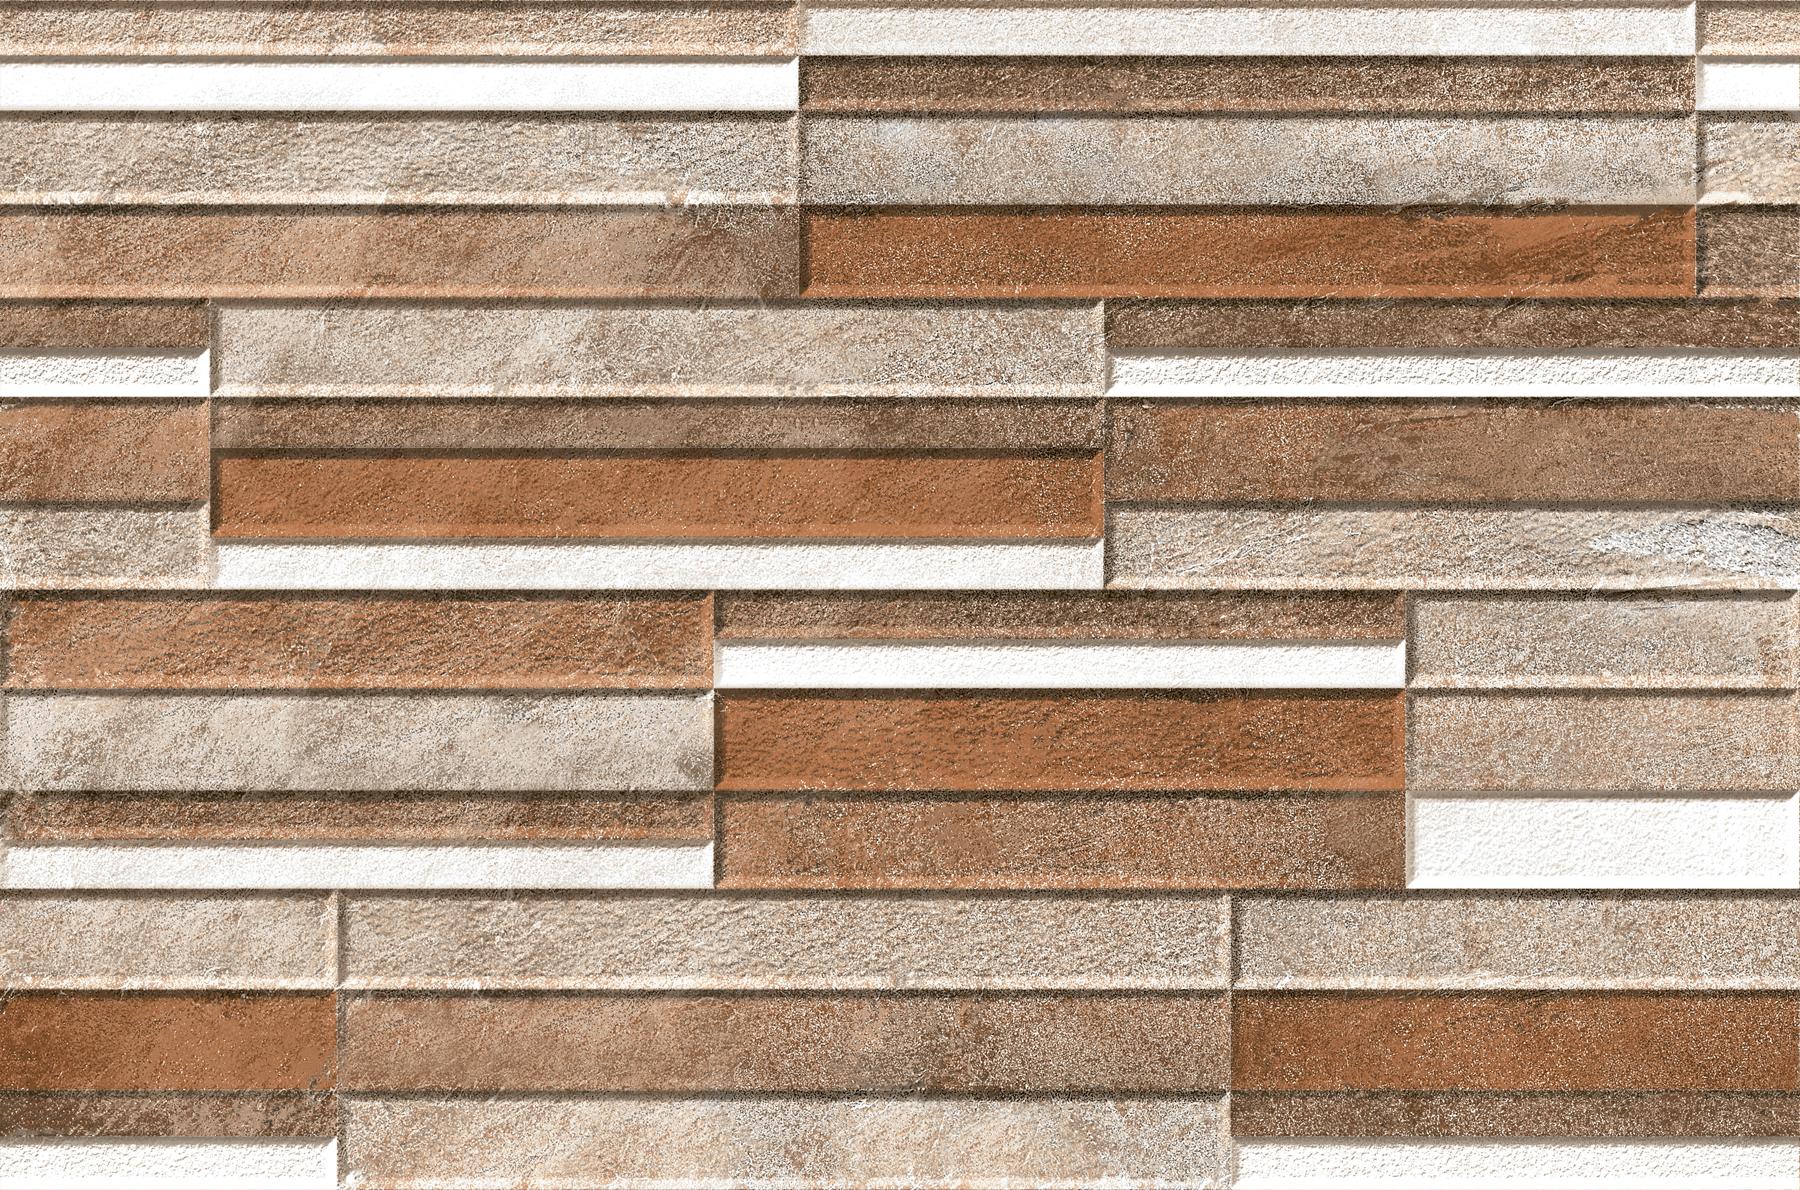 Digital Glazed Vitrified Tiles for Elevation Tiles, Accent Tiles, Outdoor Tiles, Bar/Restaurant